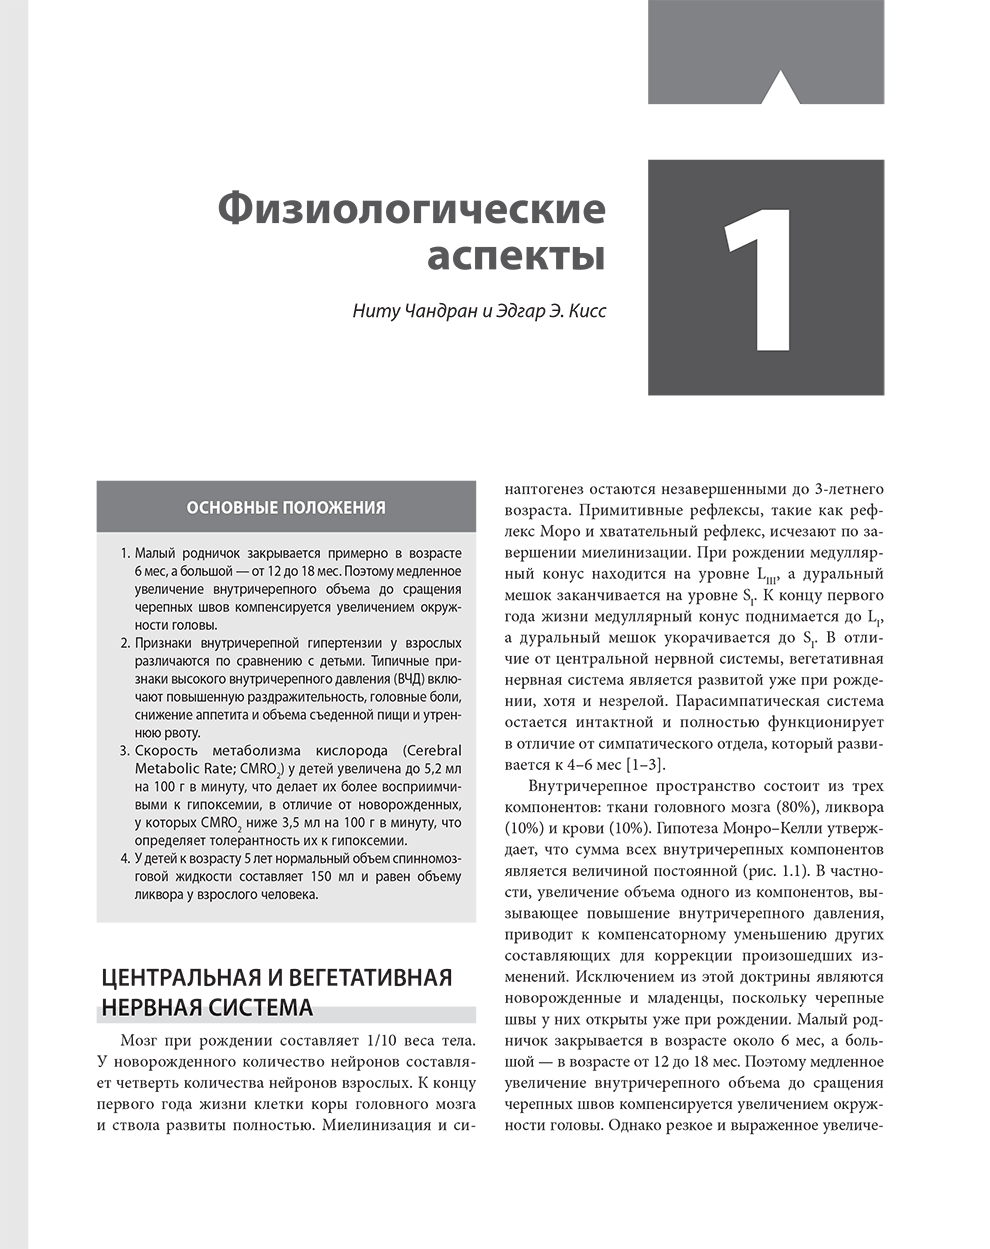 Пример страницы из книги "Клиническая анестезиология в педиатрической практике. Руководство" - Эллинас Г., Маттес К., Альраяши В., Бильге А.